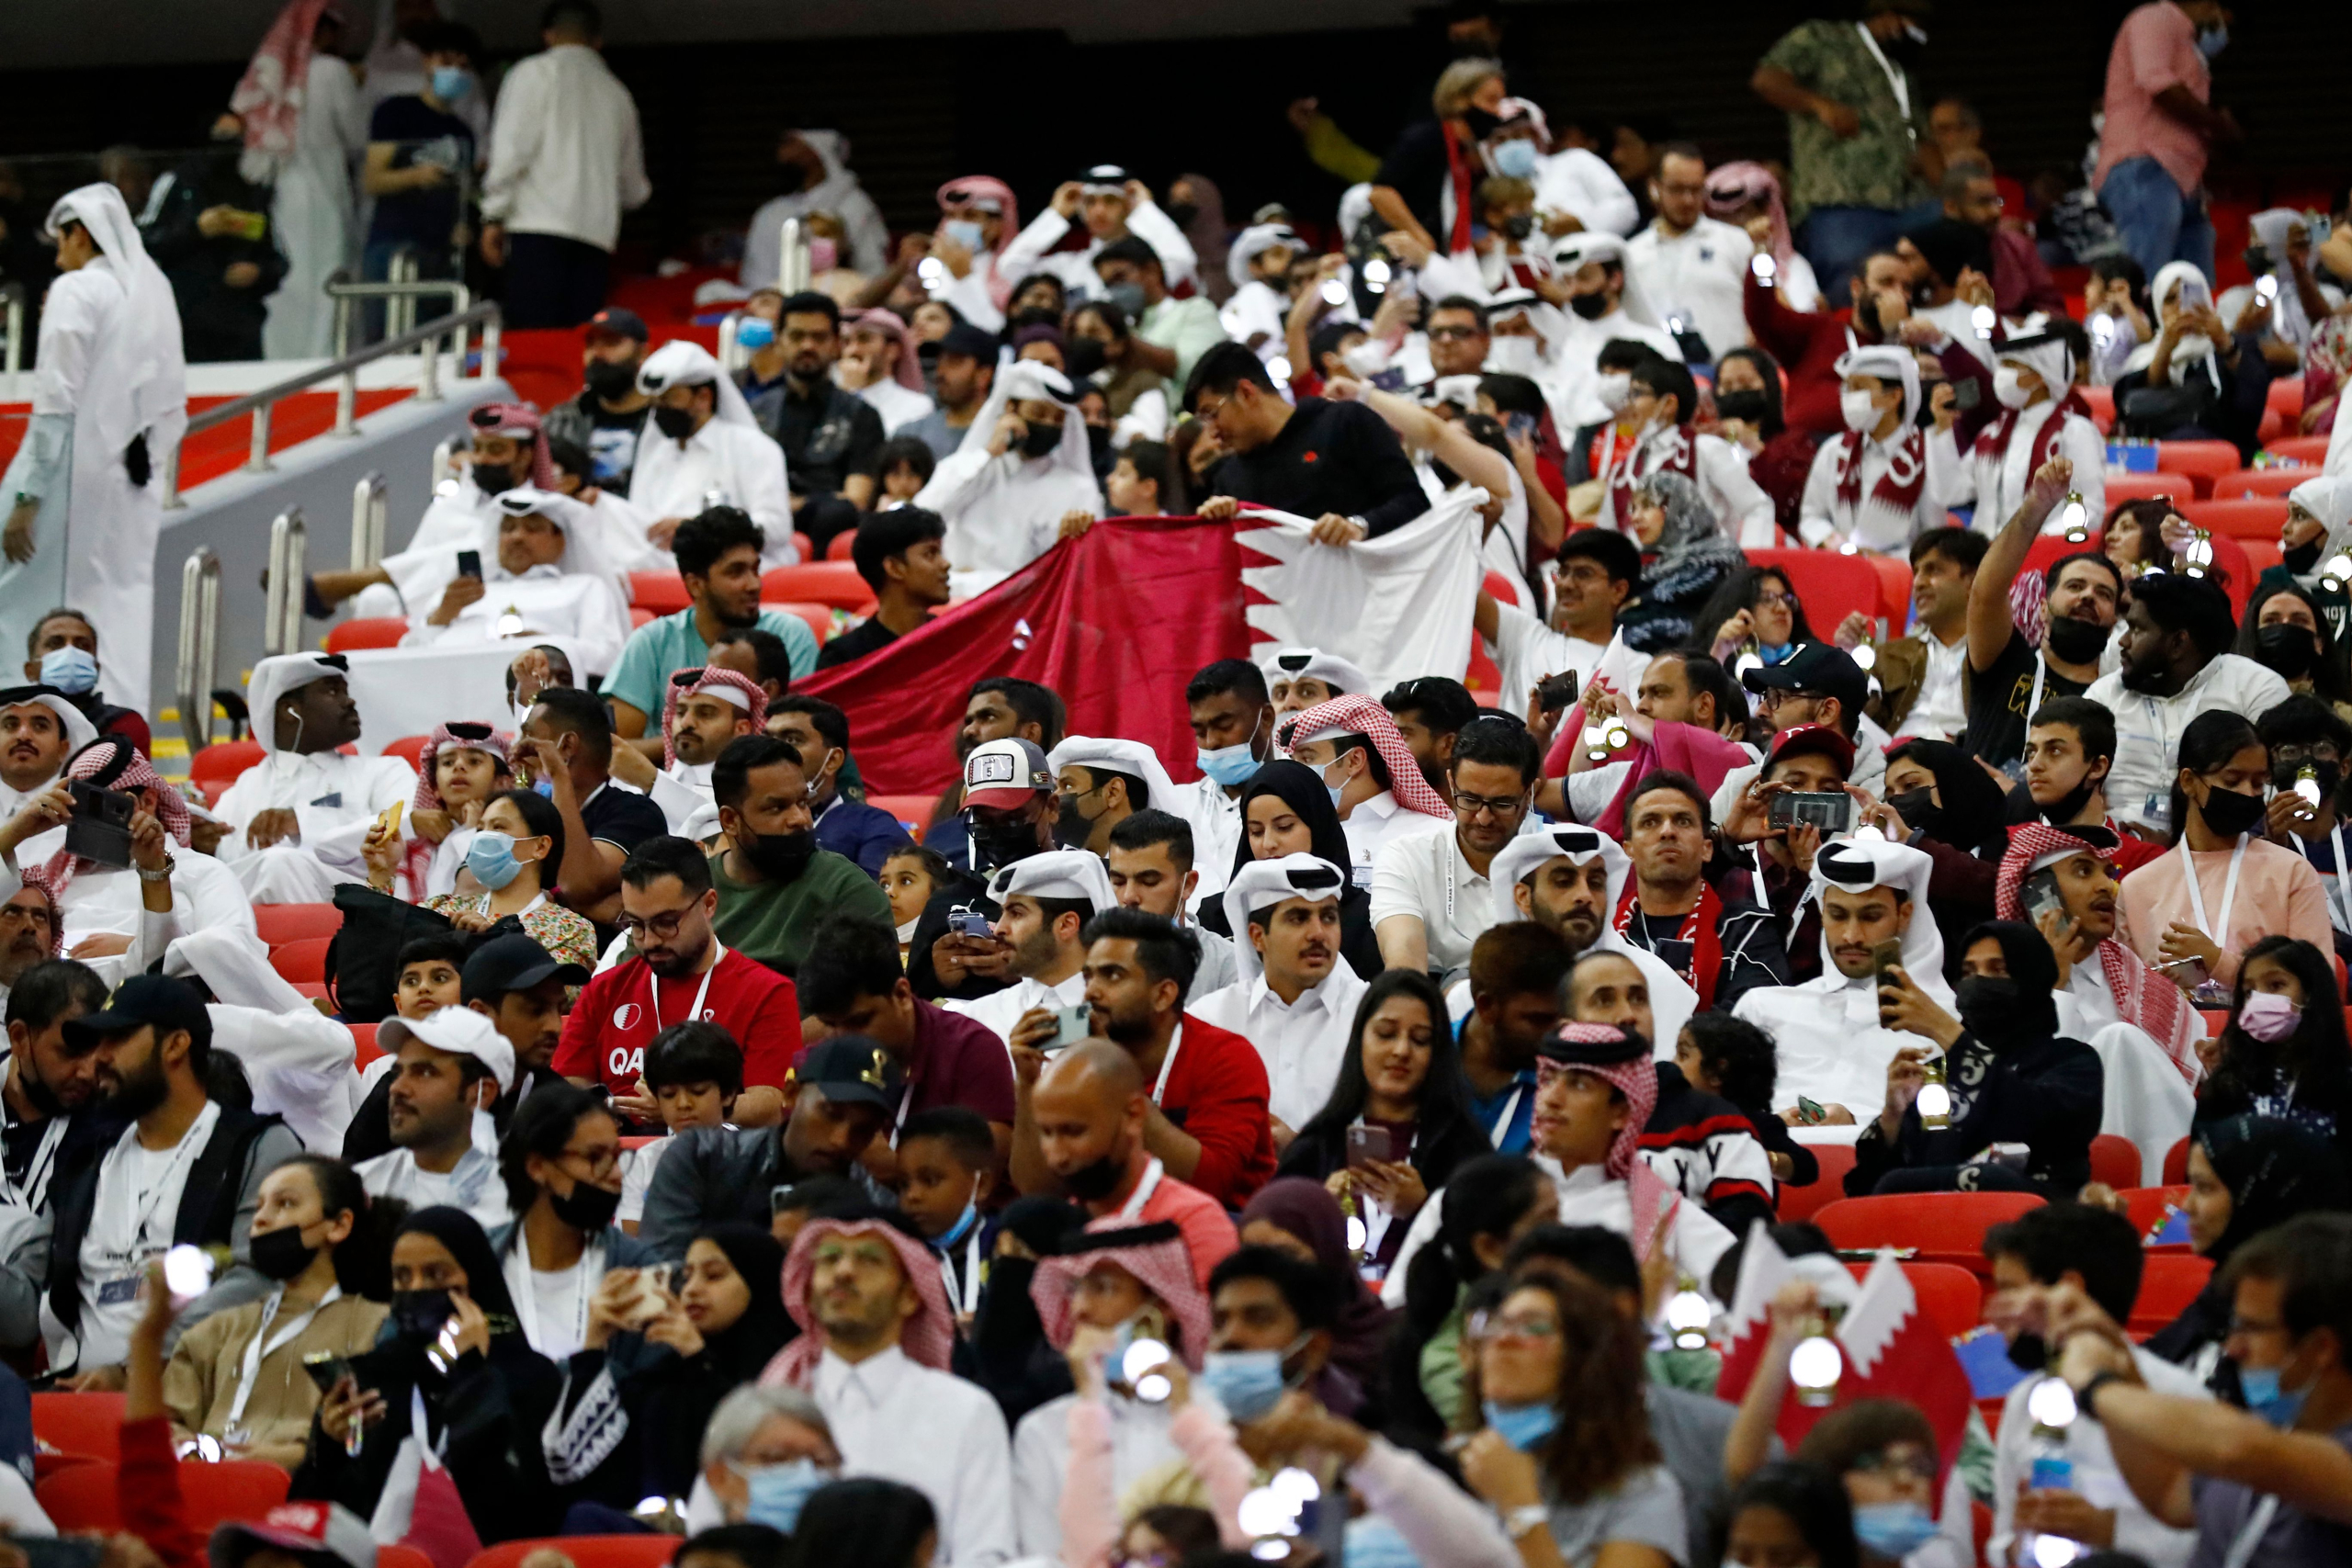 كأس العرب.. بيع أكثر من نصف مليون تذكرة بعد إجراء ربع النهائي